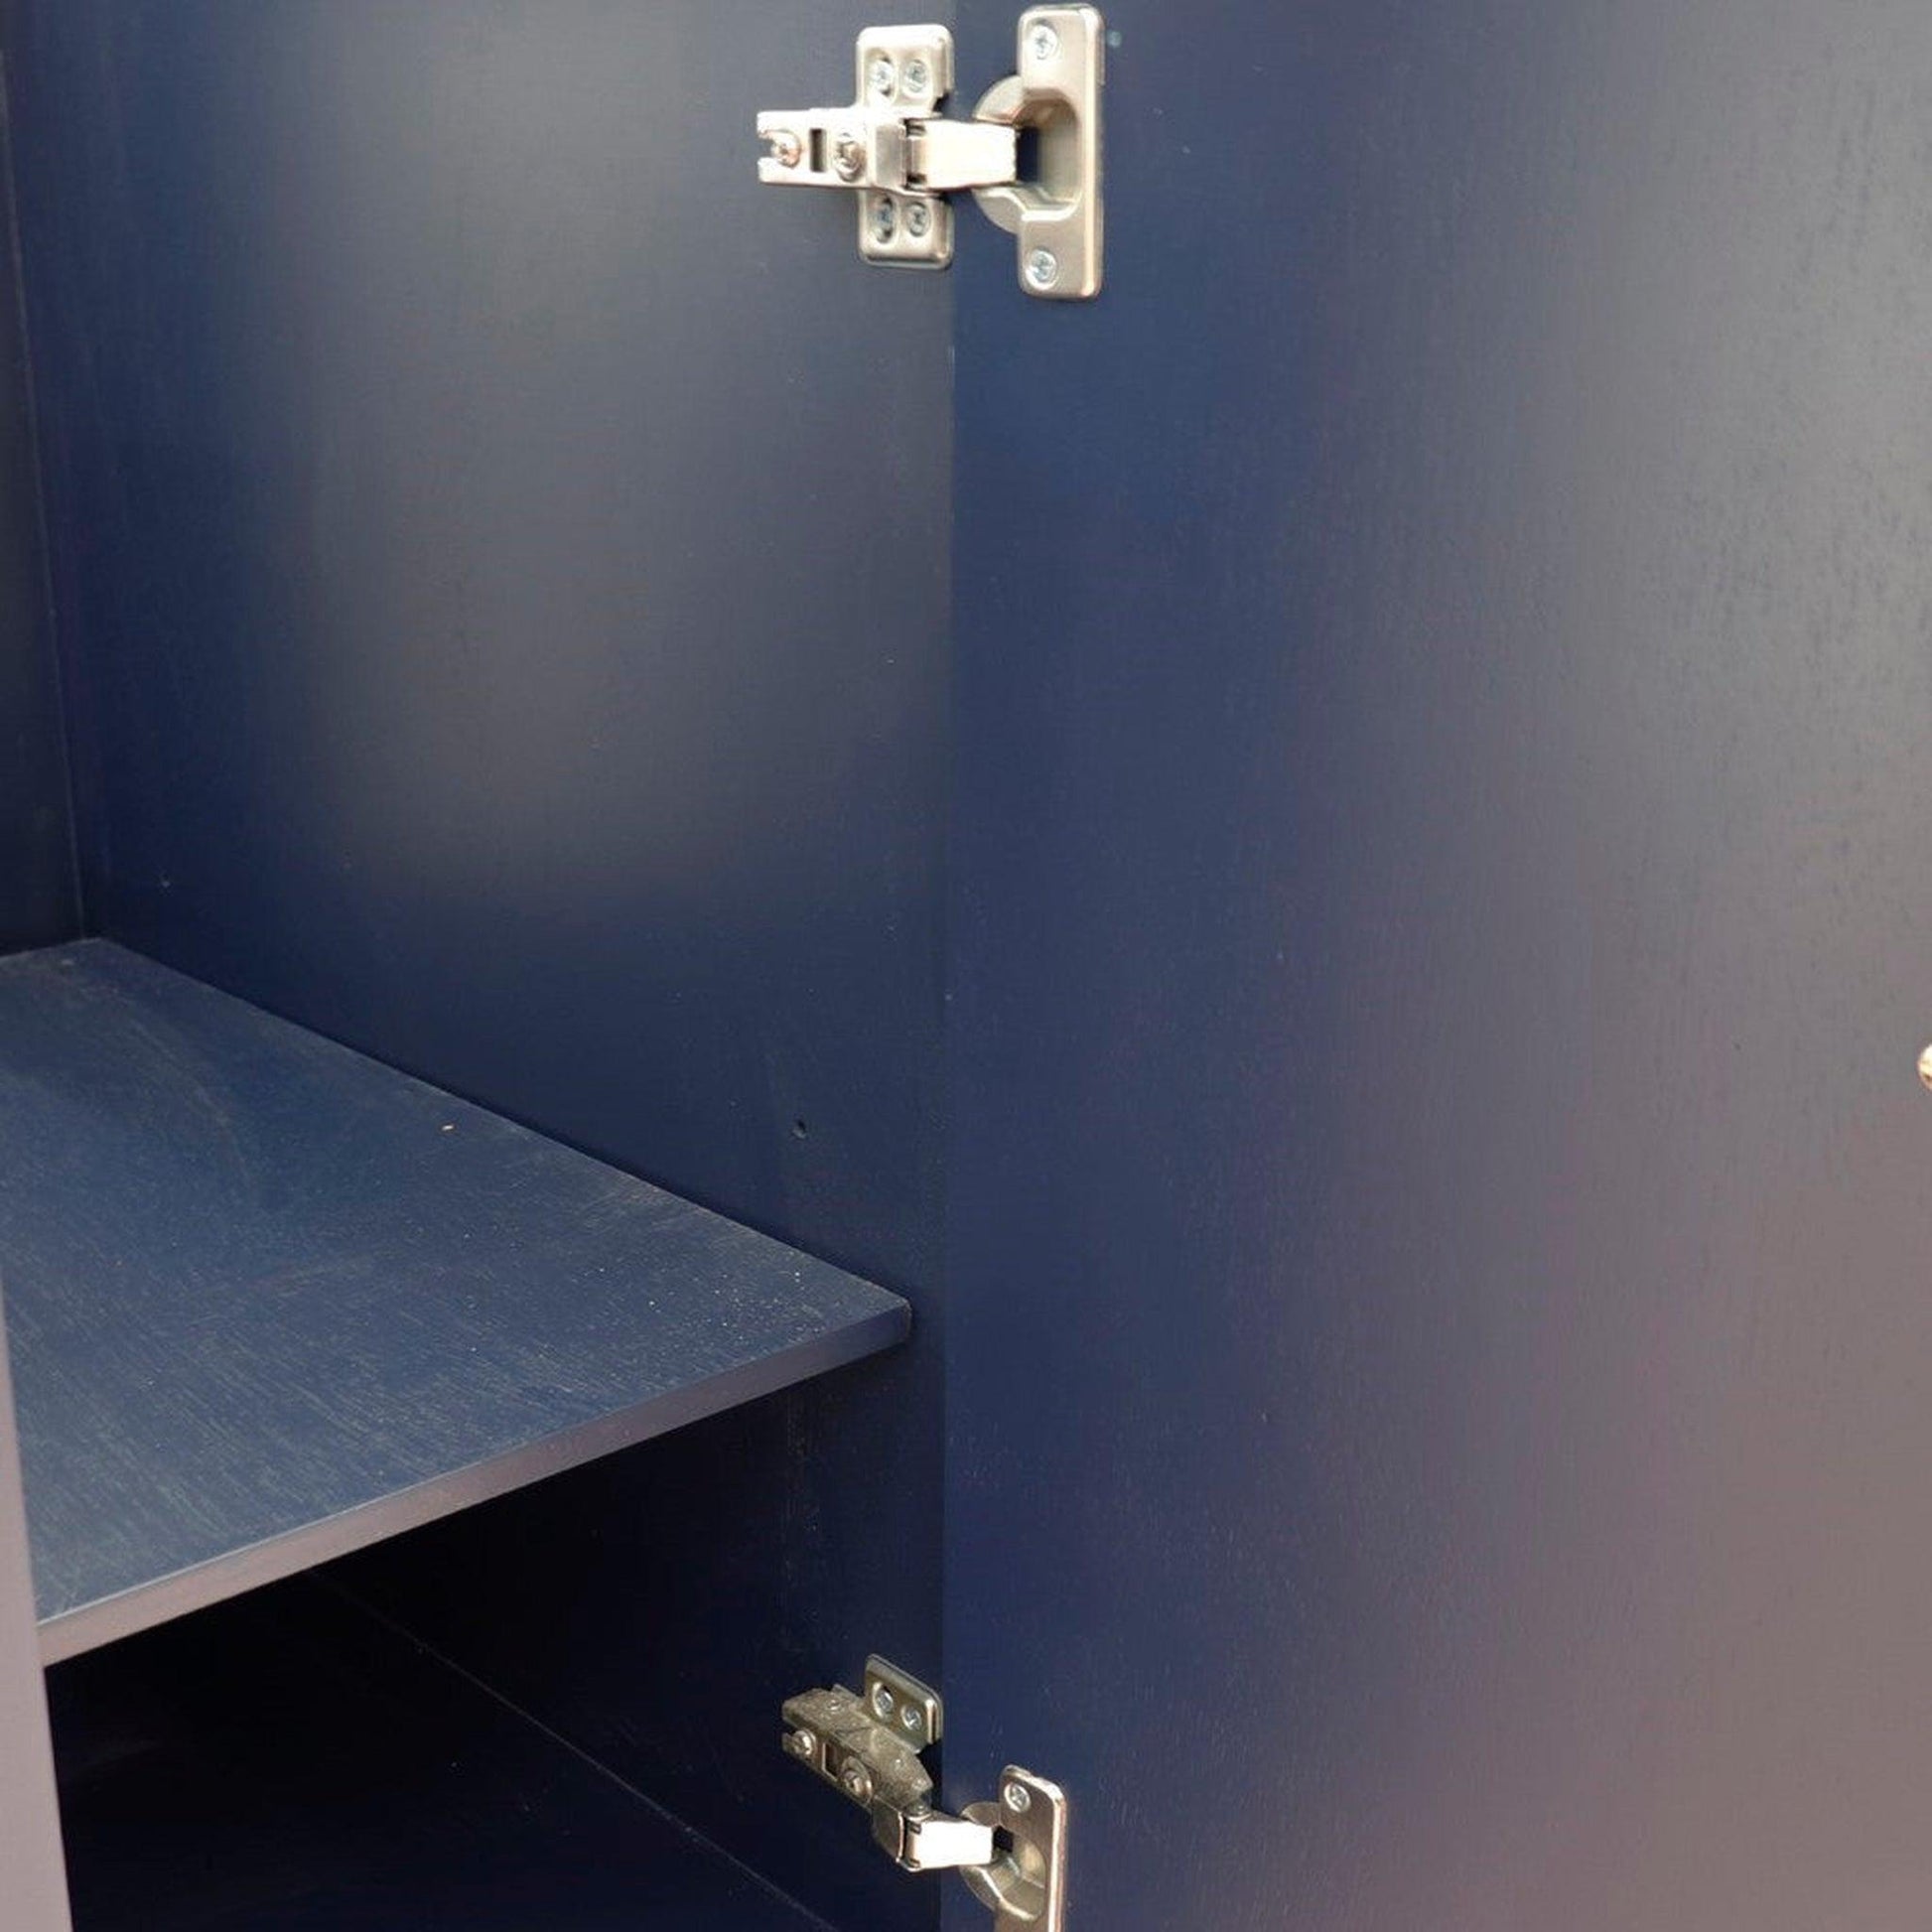 Bellaterra Home Forli 37" 2-Door 3-Drawer Blue Freestanding Vanity Set With Ceramic Left Offset Vessel Sink and Gray Granite Top, and Left Door Cabinet